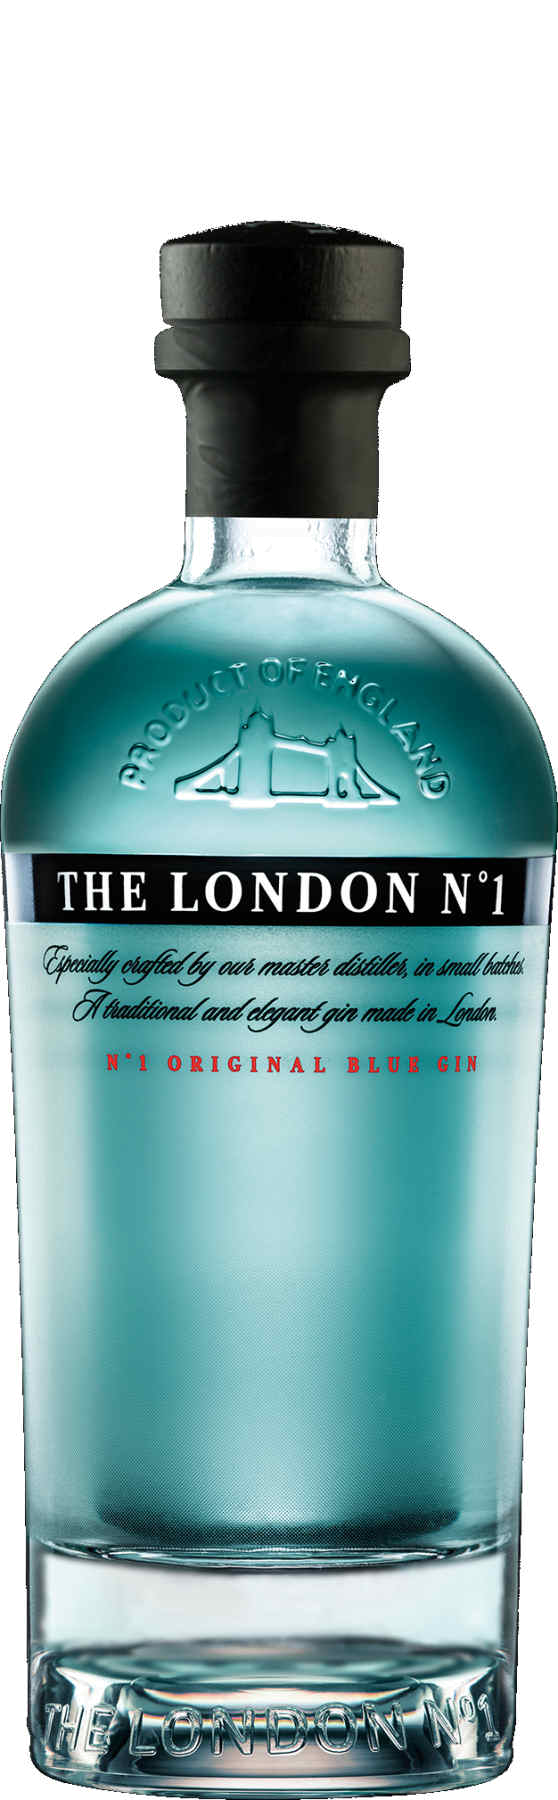 The London N° 1 Gin